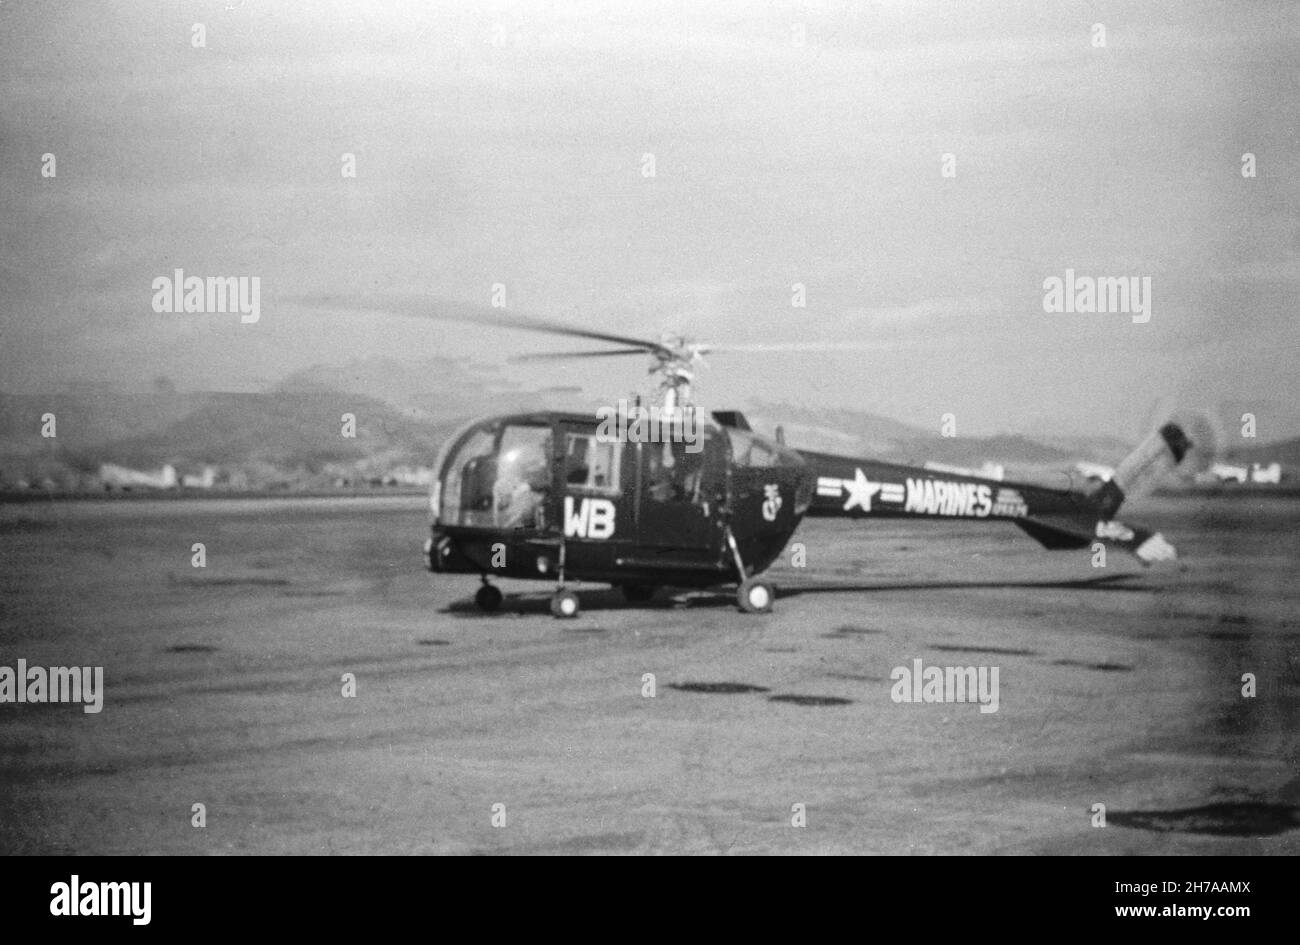 Una fotografía de un helicóptero DEL Cuerpo de Marines de los Estados Unidos Sikorsky HO-5S, número de serie 125525, tomada en Seúl durante la Guerra de Corea, en 1953 o 1954. Foto de stock